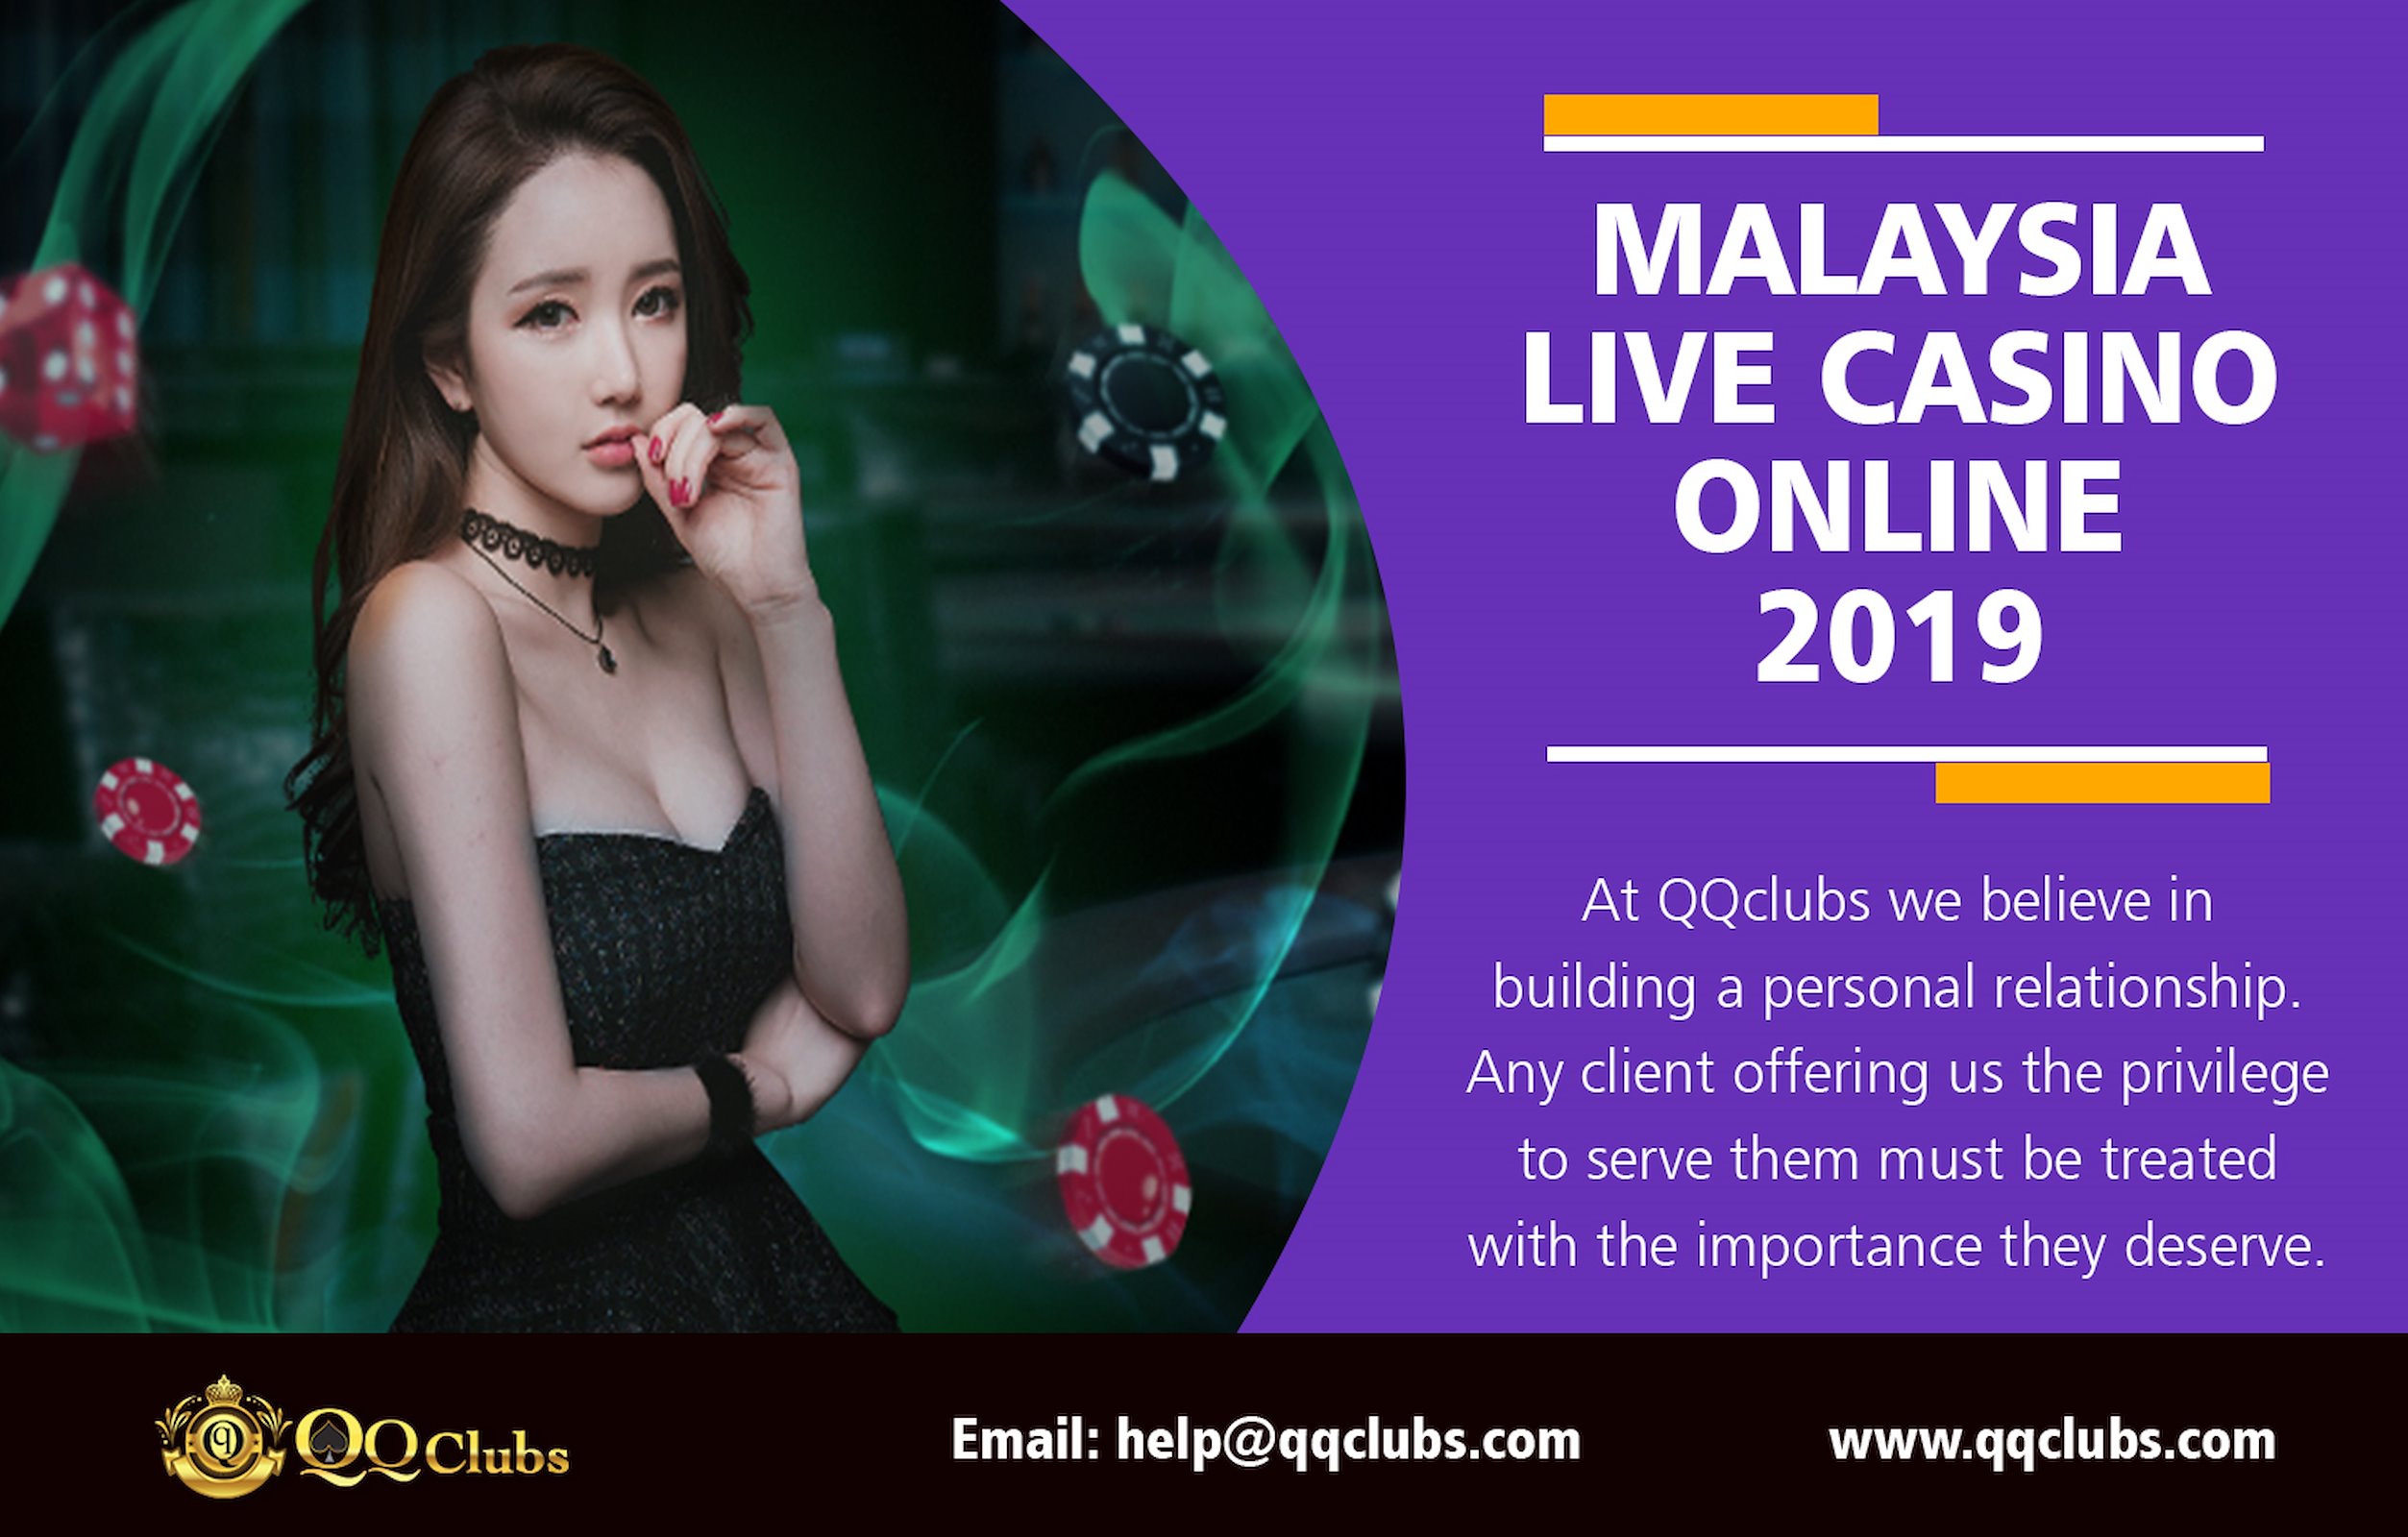 Malaysia casino online free credit 2019 казино онлайн в россии реальные деньги